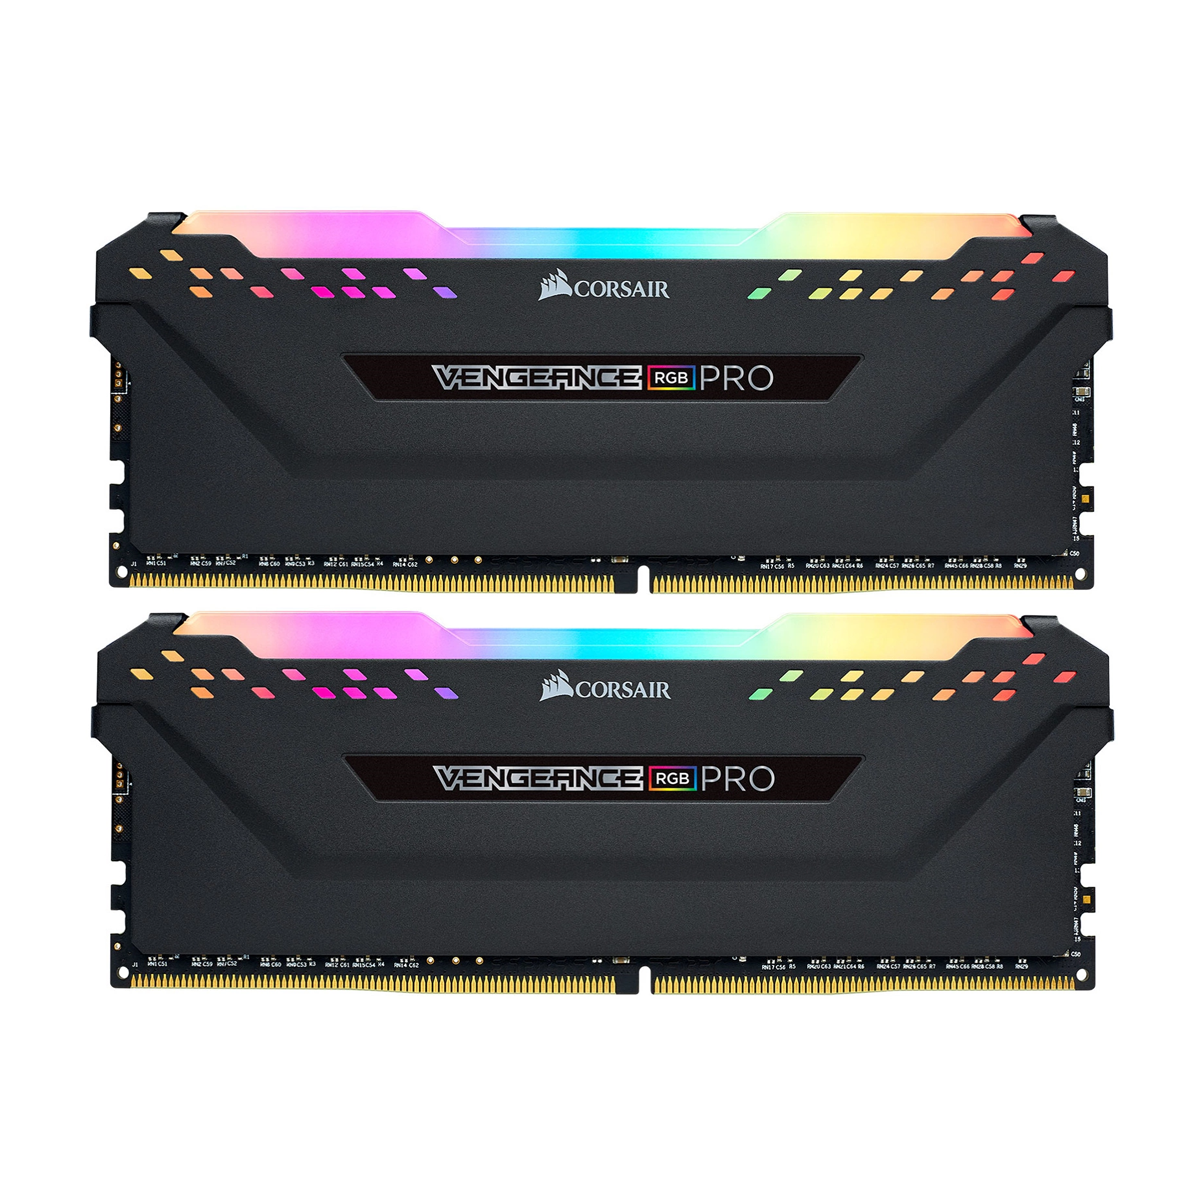 رم کامپیوتر DDR4 دو کاناله 3200 مگاهرتز CL16 کورسیر مدل VENGEANCE RGB PRO ظرفیت 32 گیگابایت